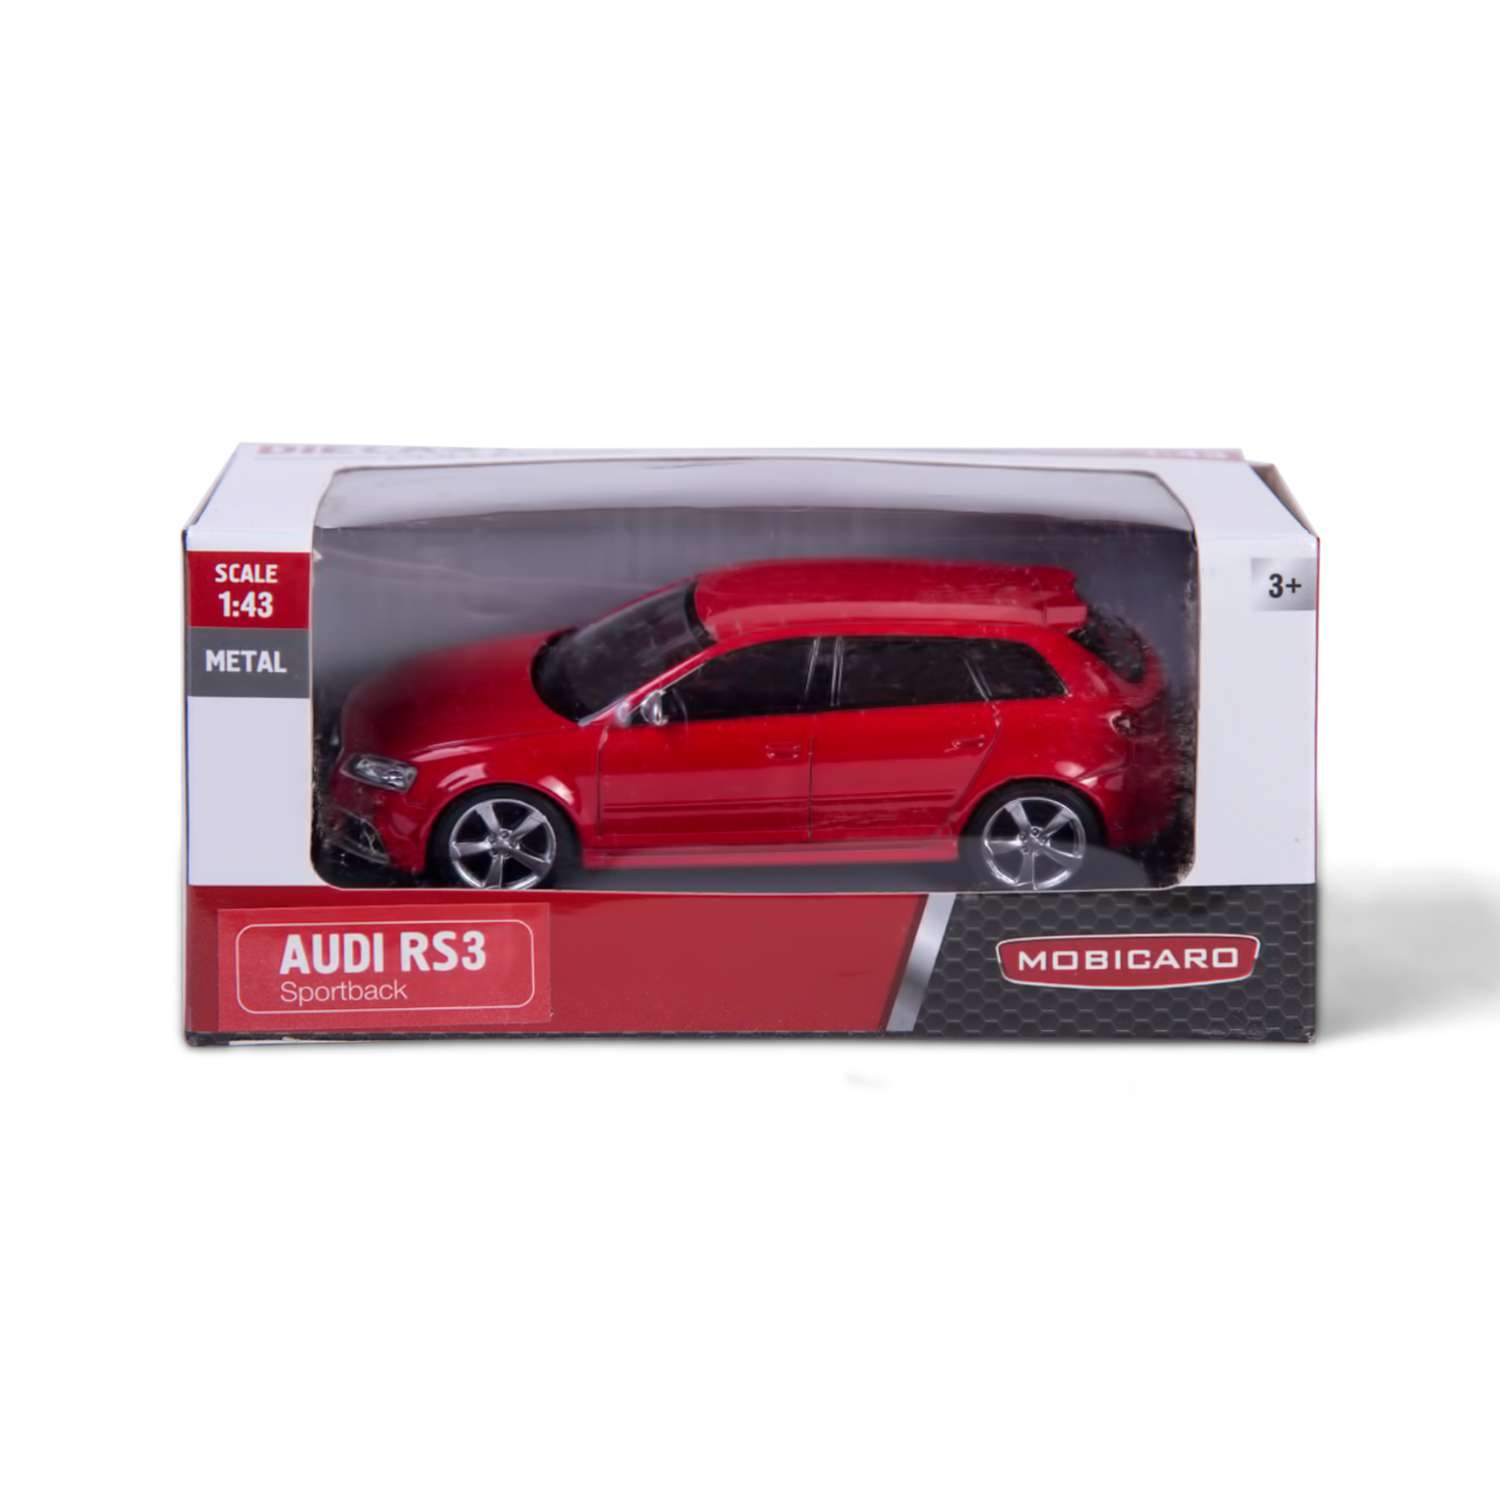 Машинка Mobicaro Audi RS3 Sportback 1:43 в ассортименте 444011 - фото 3